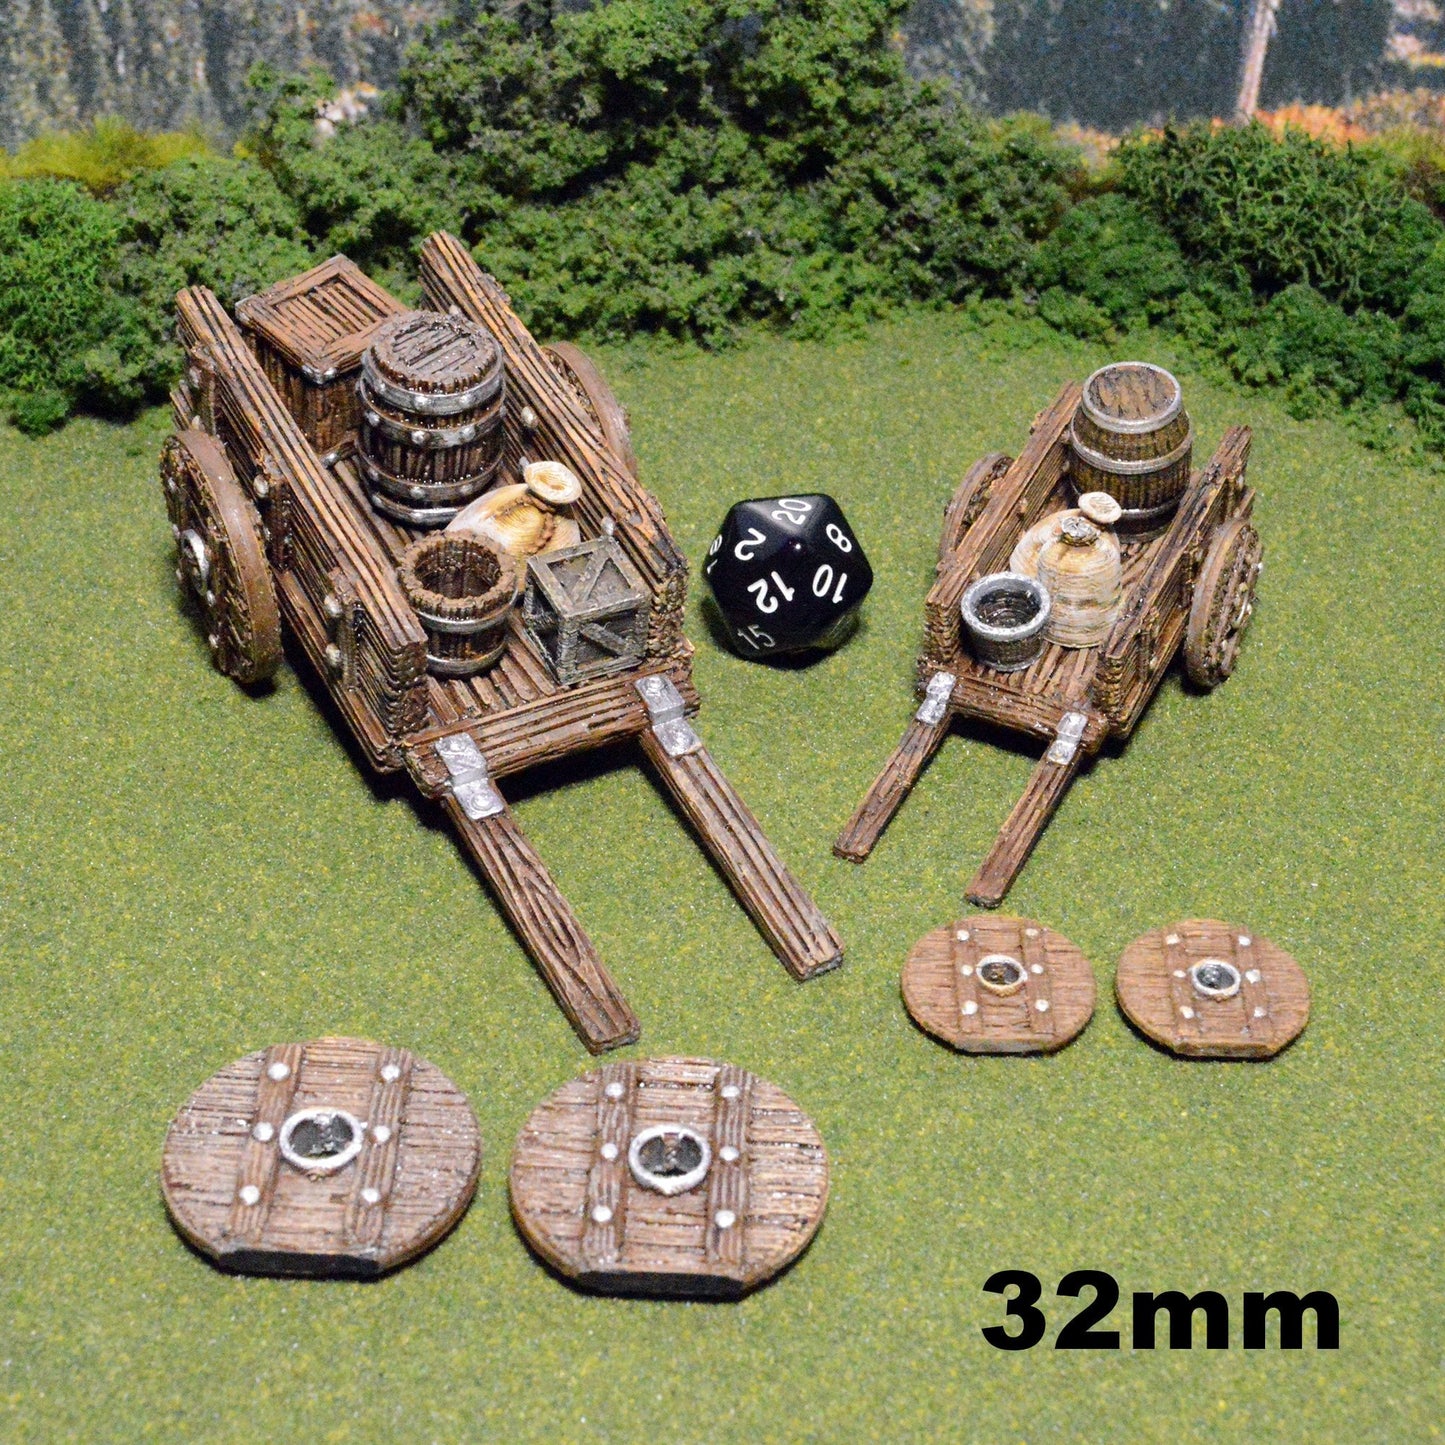 Wagons and Cargo 28mm 32mm for D&D Terrain, DnD Pathfinder Merchant Supplies, Miniature Cart Crates Barrels Sacks